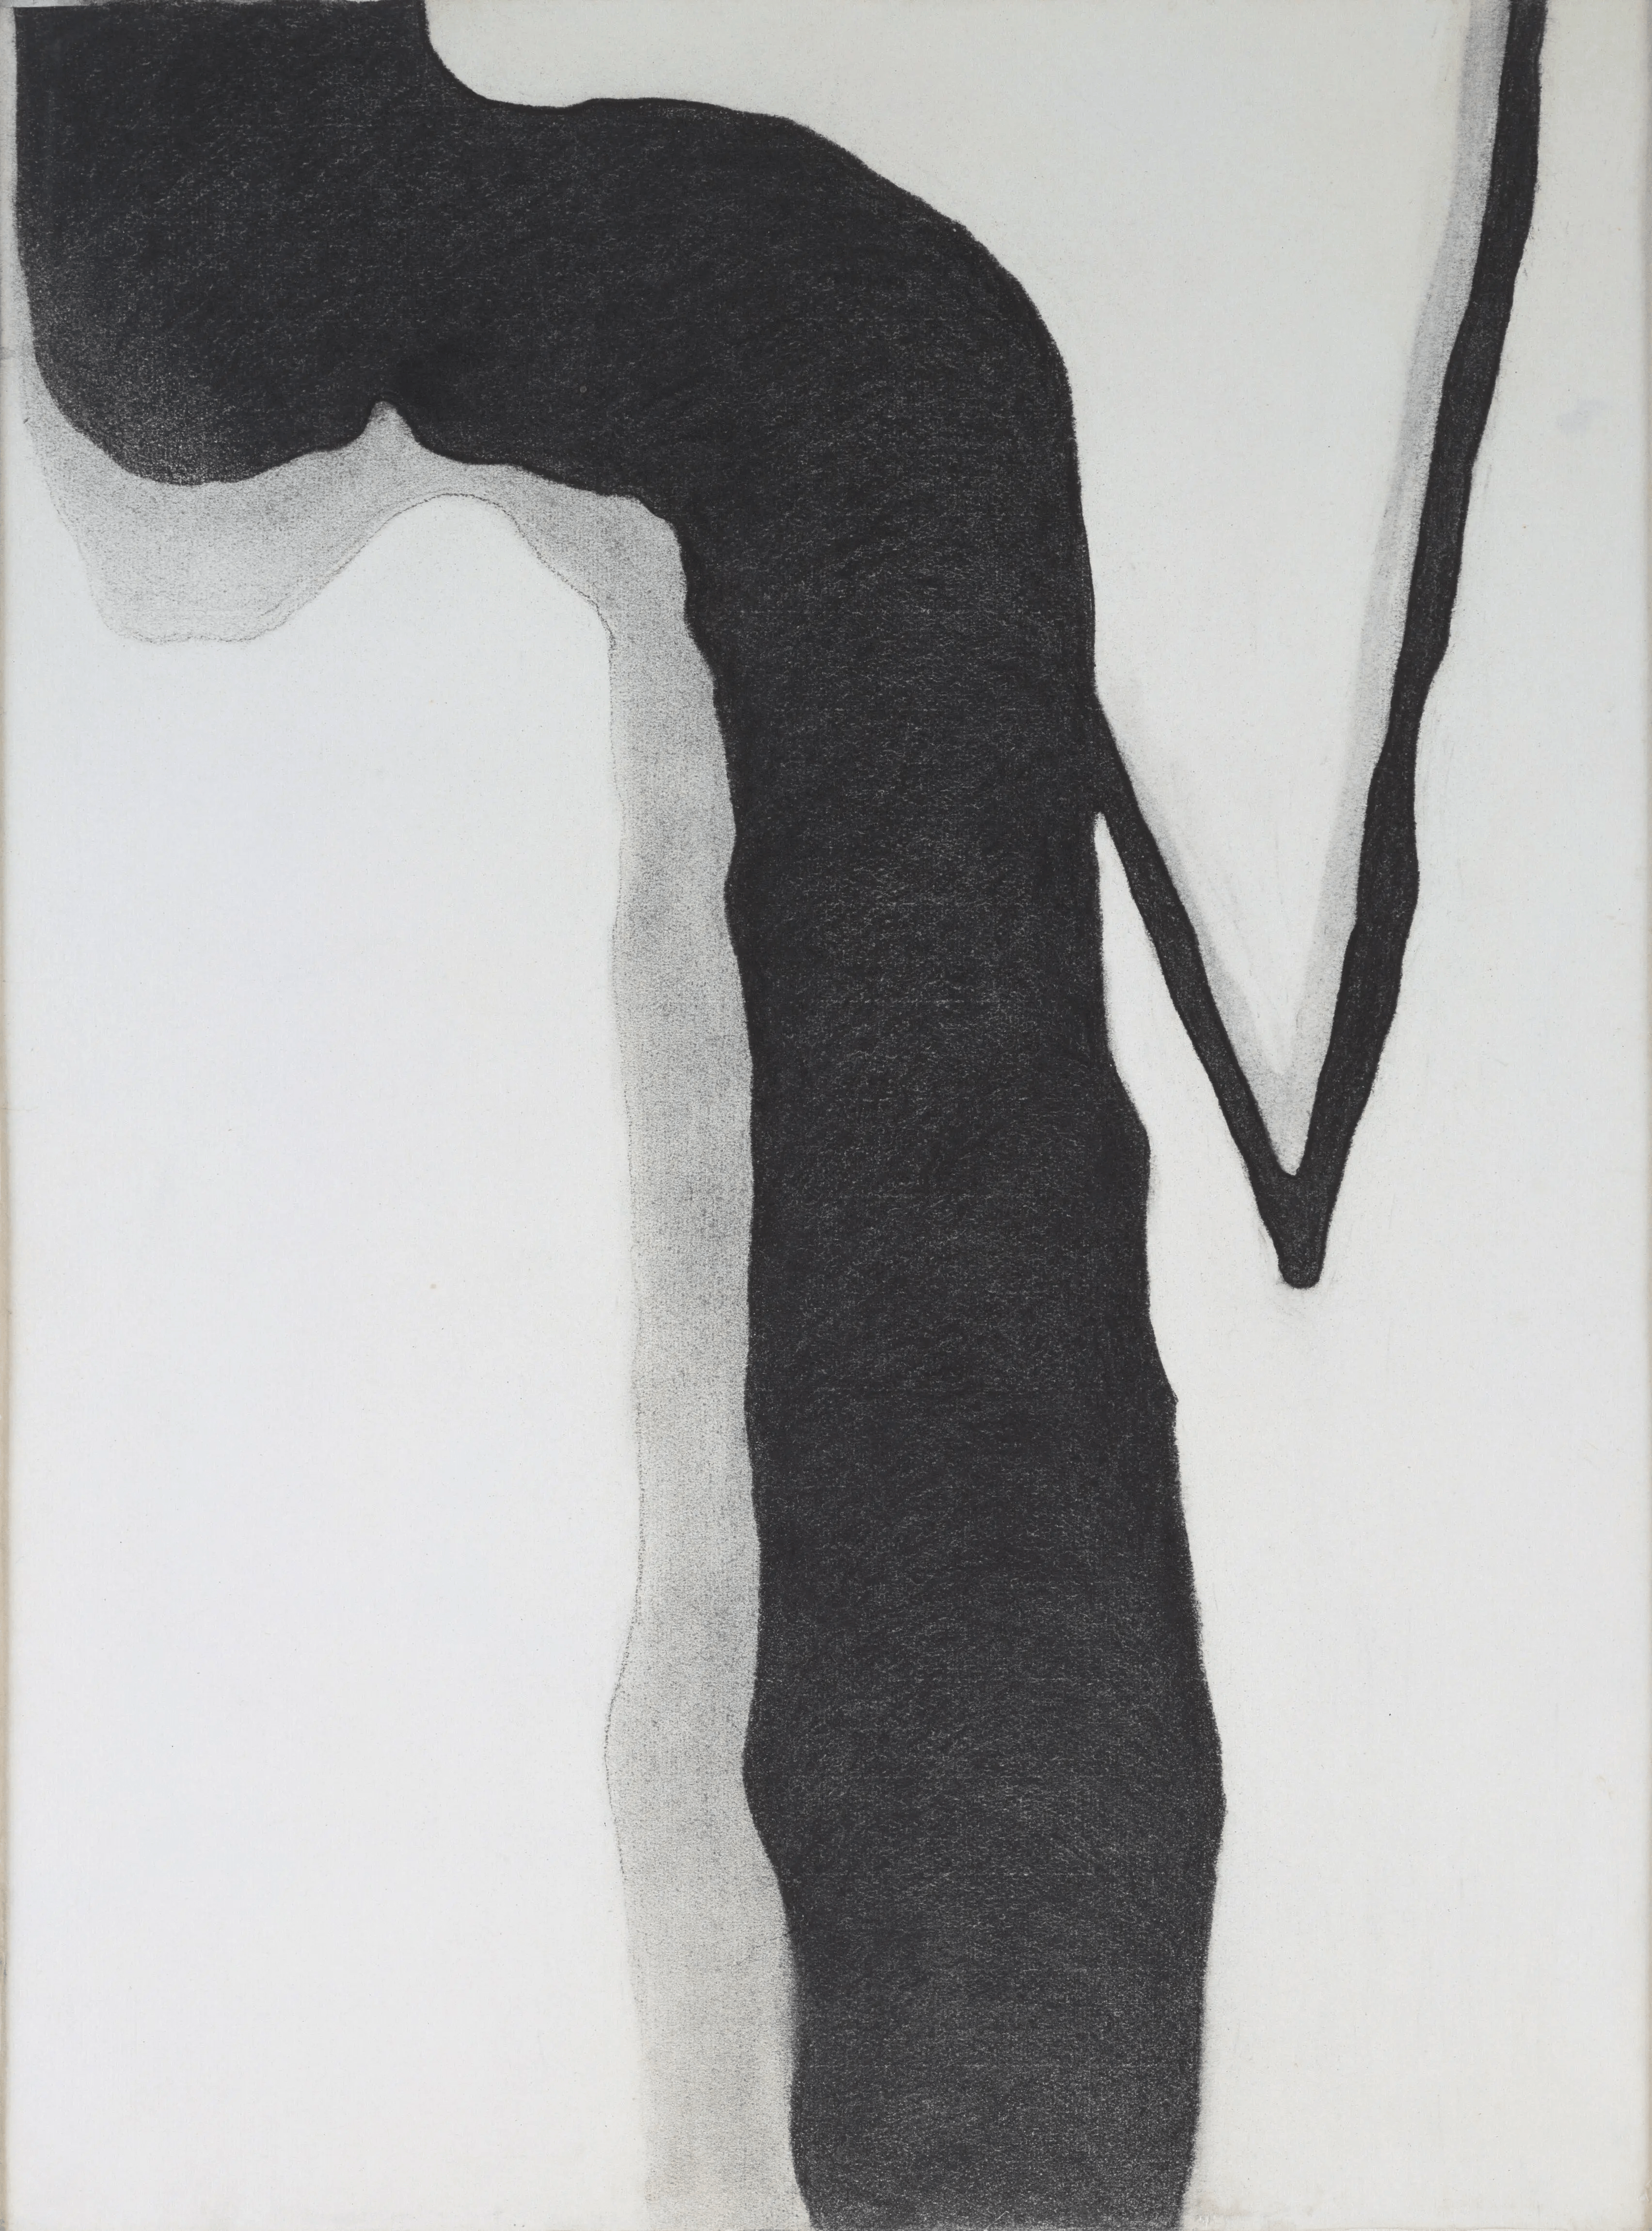 Lucrări rare, pe hârtie, realizate de Georgia O’Keeffe – expuse la MoMA, anul viitor